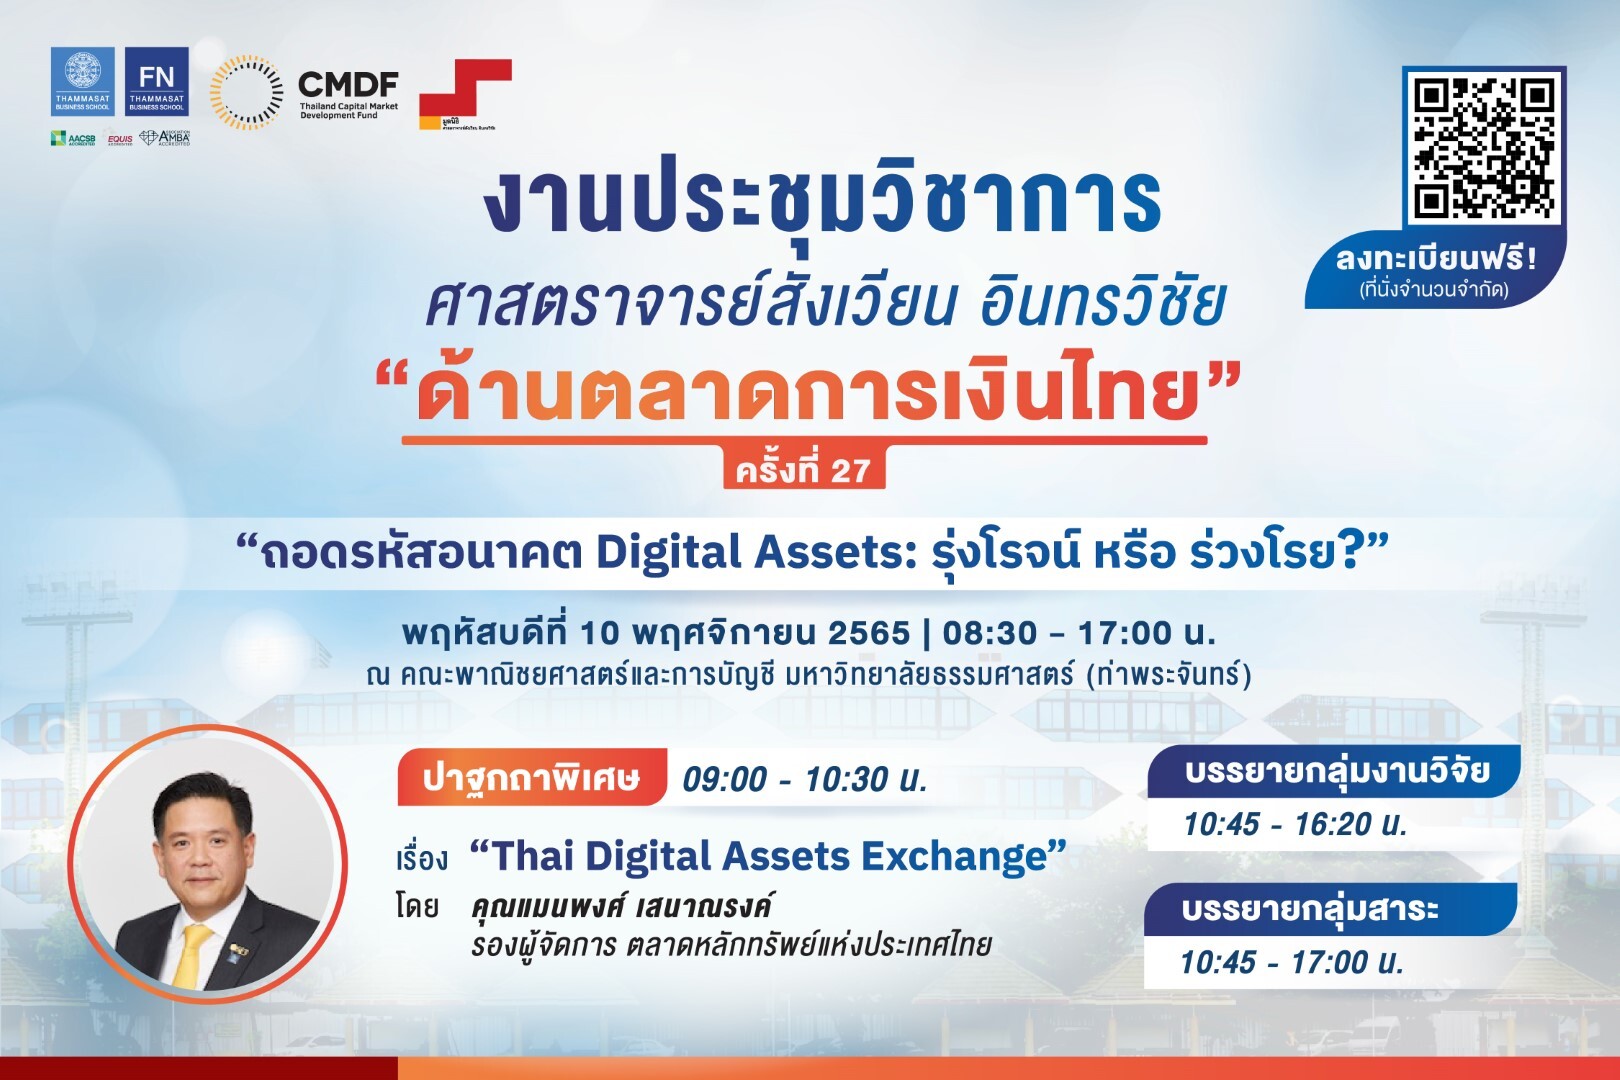 ประชุมทางวิชาการ "ศาสตราจารย์สังเวียน อินทรวิชัย ด้านตลาดการเงินไทย" ครั้งที่ 27